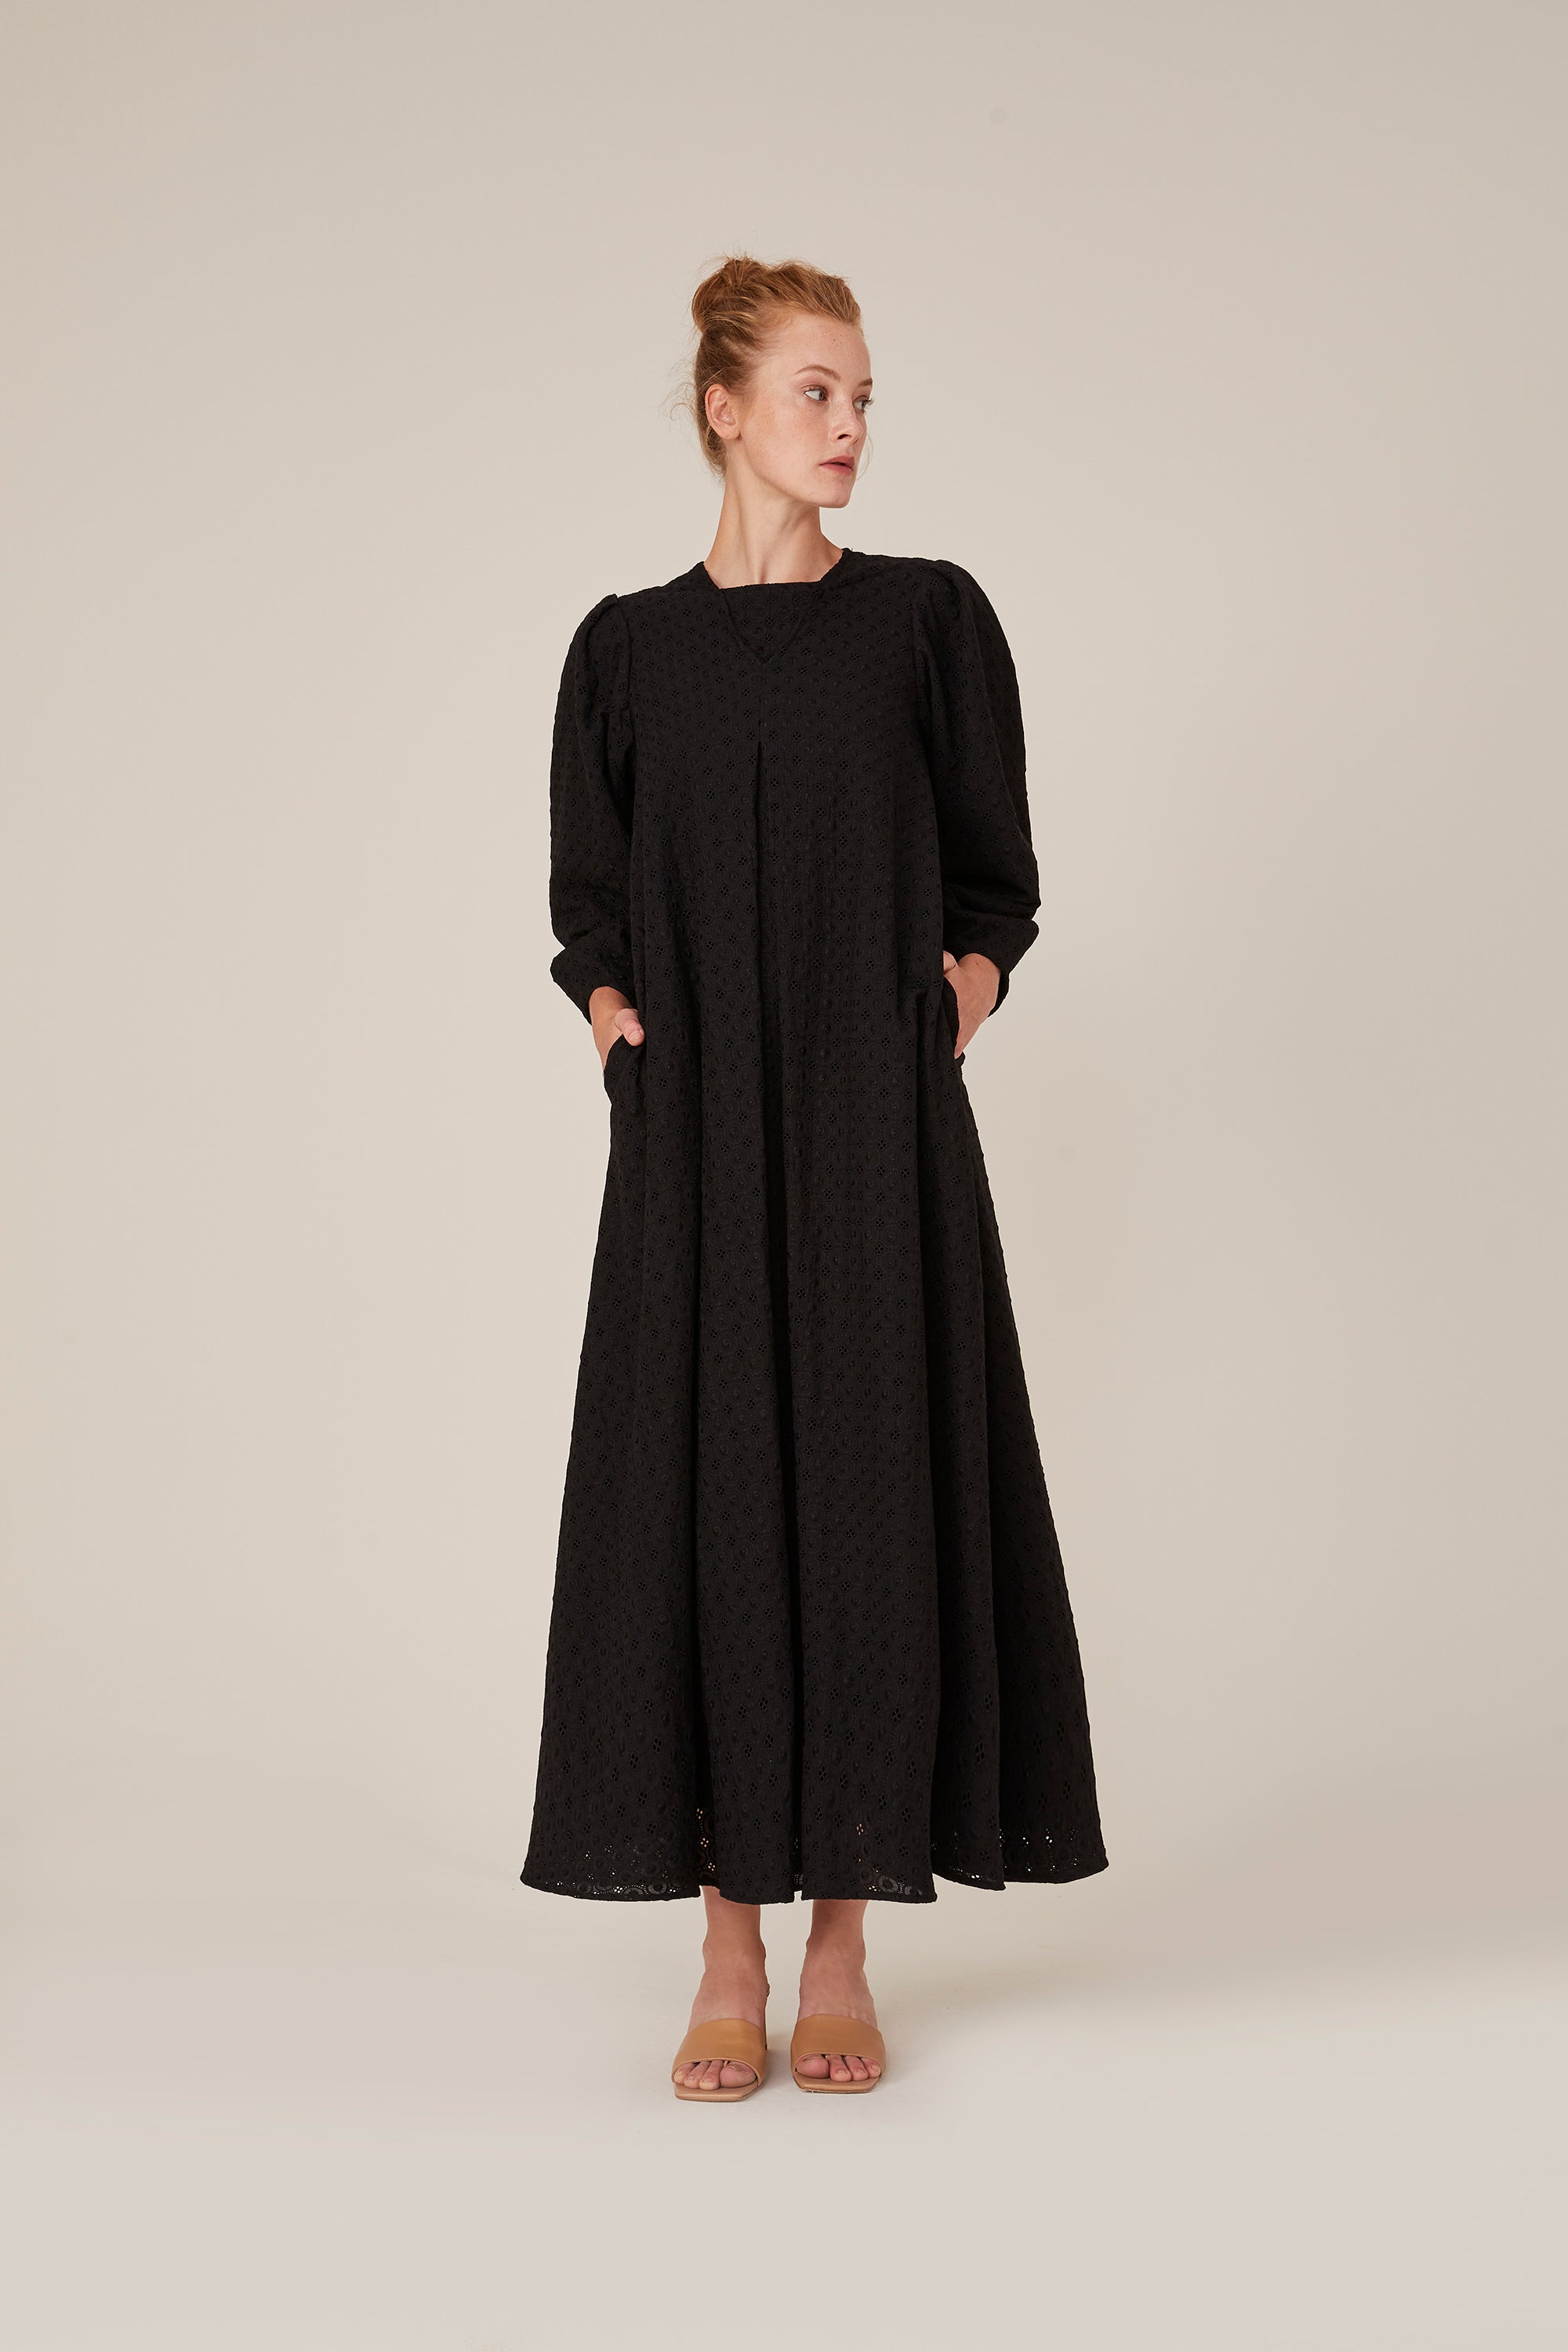 Kleid Montreux-Schwarz 100% Bio-Baumwolle 🌿